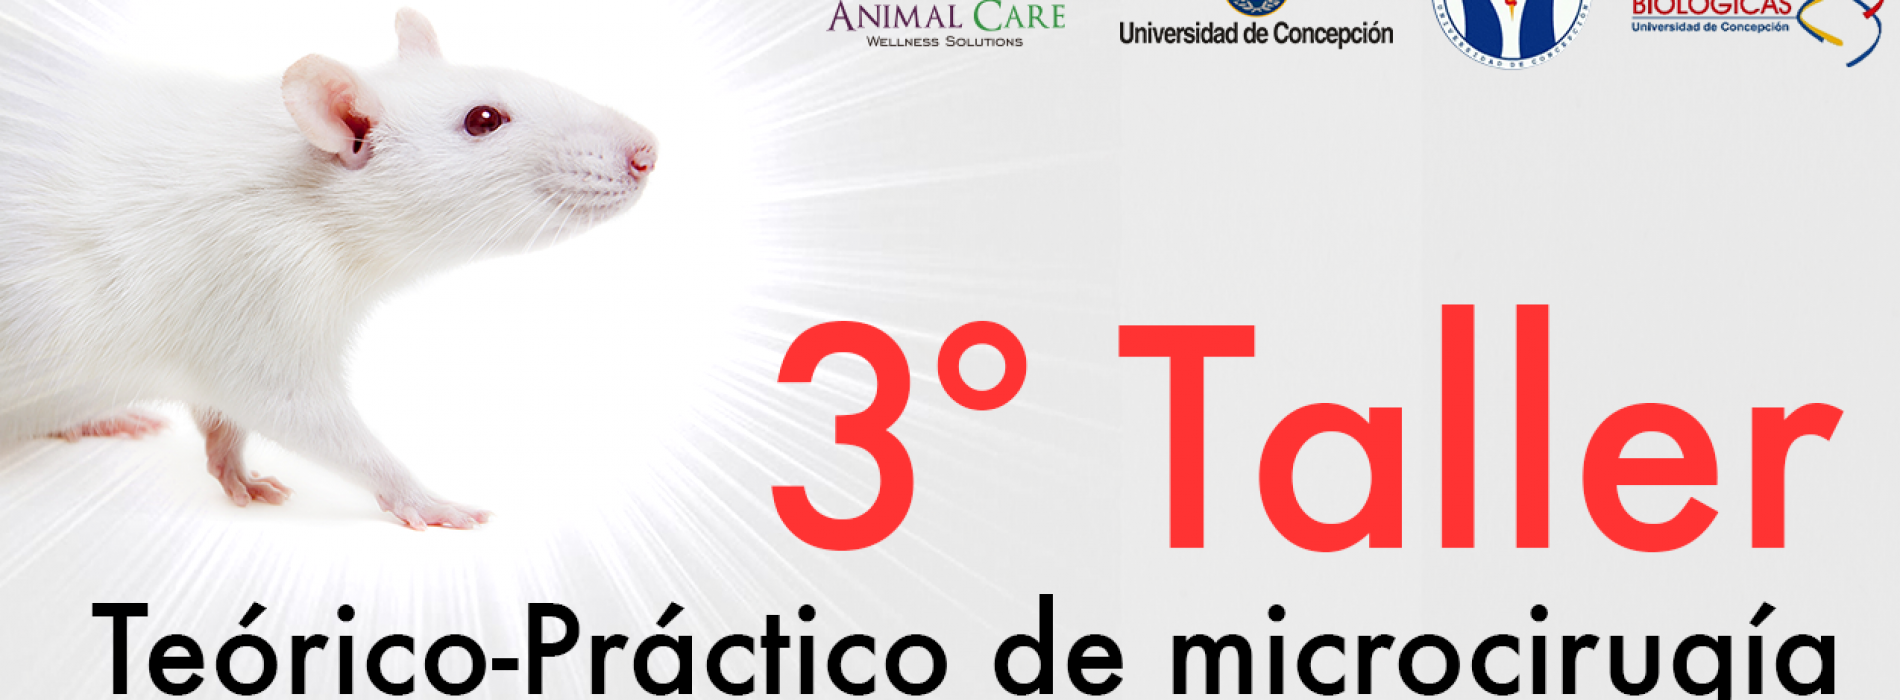 «TALLER DE MICROCIRUGÍA EN ANIMALES DE INVESTIGACIÓN” – Universidad de Concepción. QUEDA 1 SEMANA